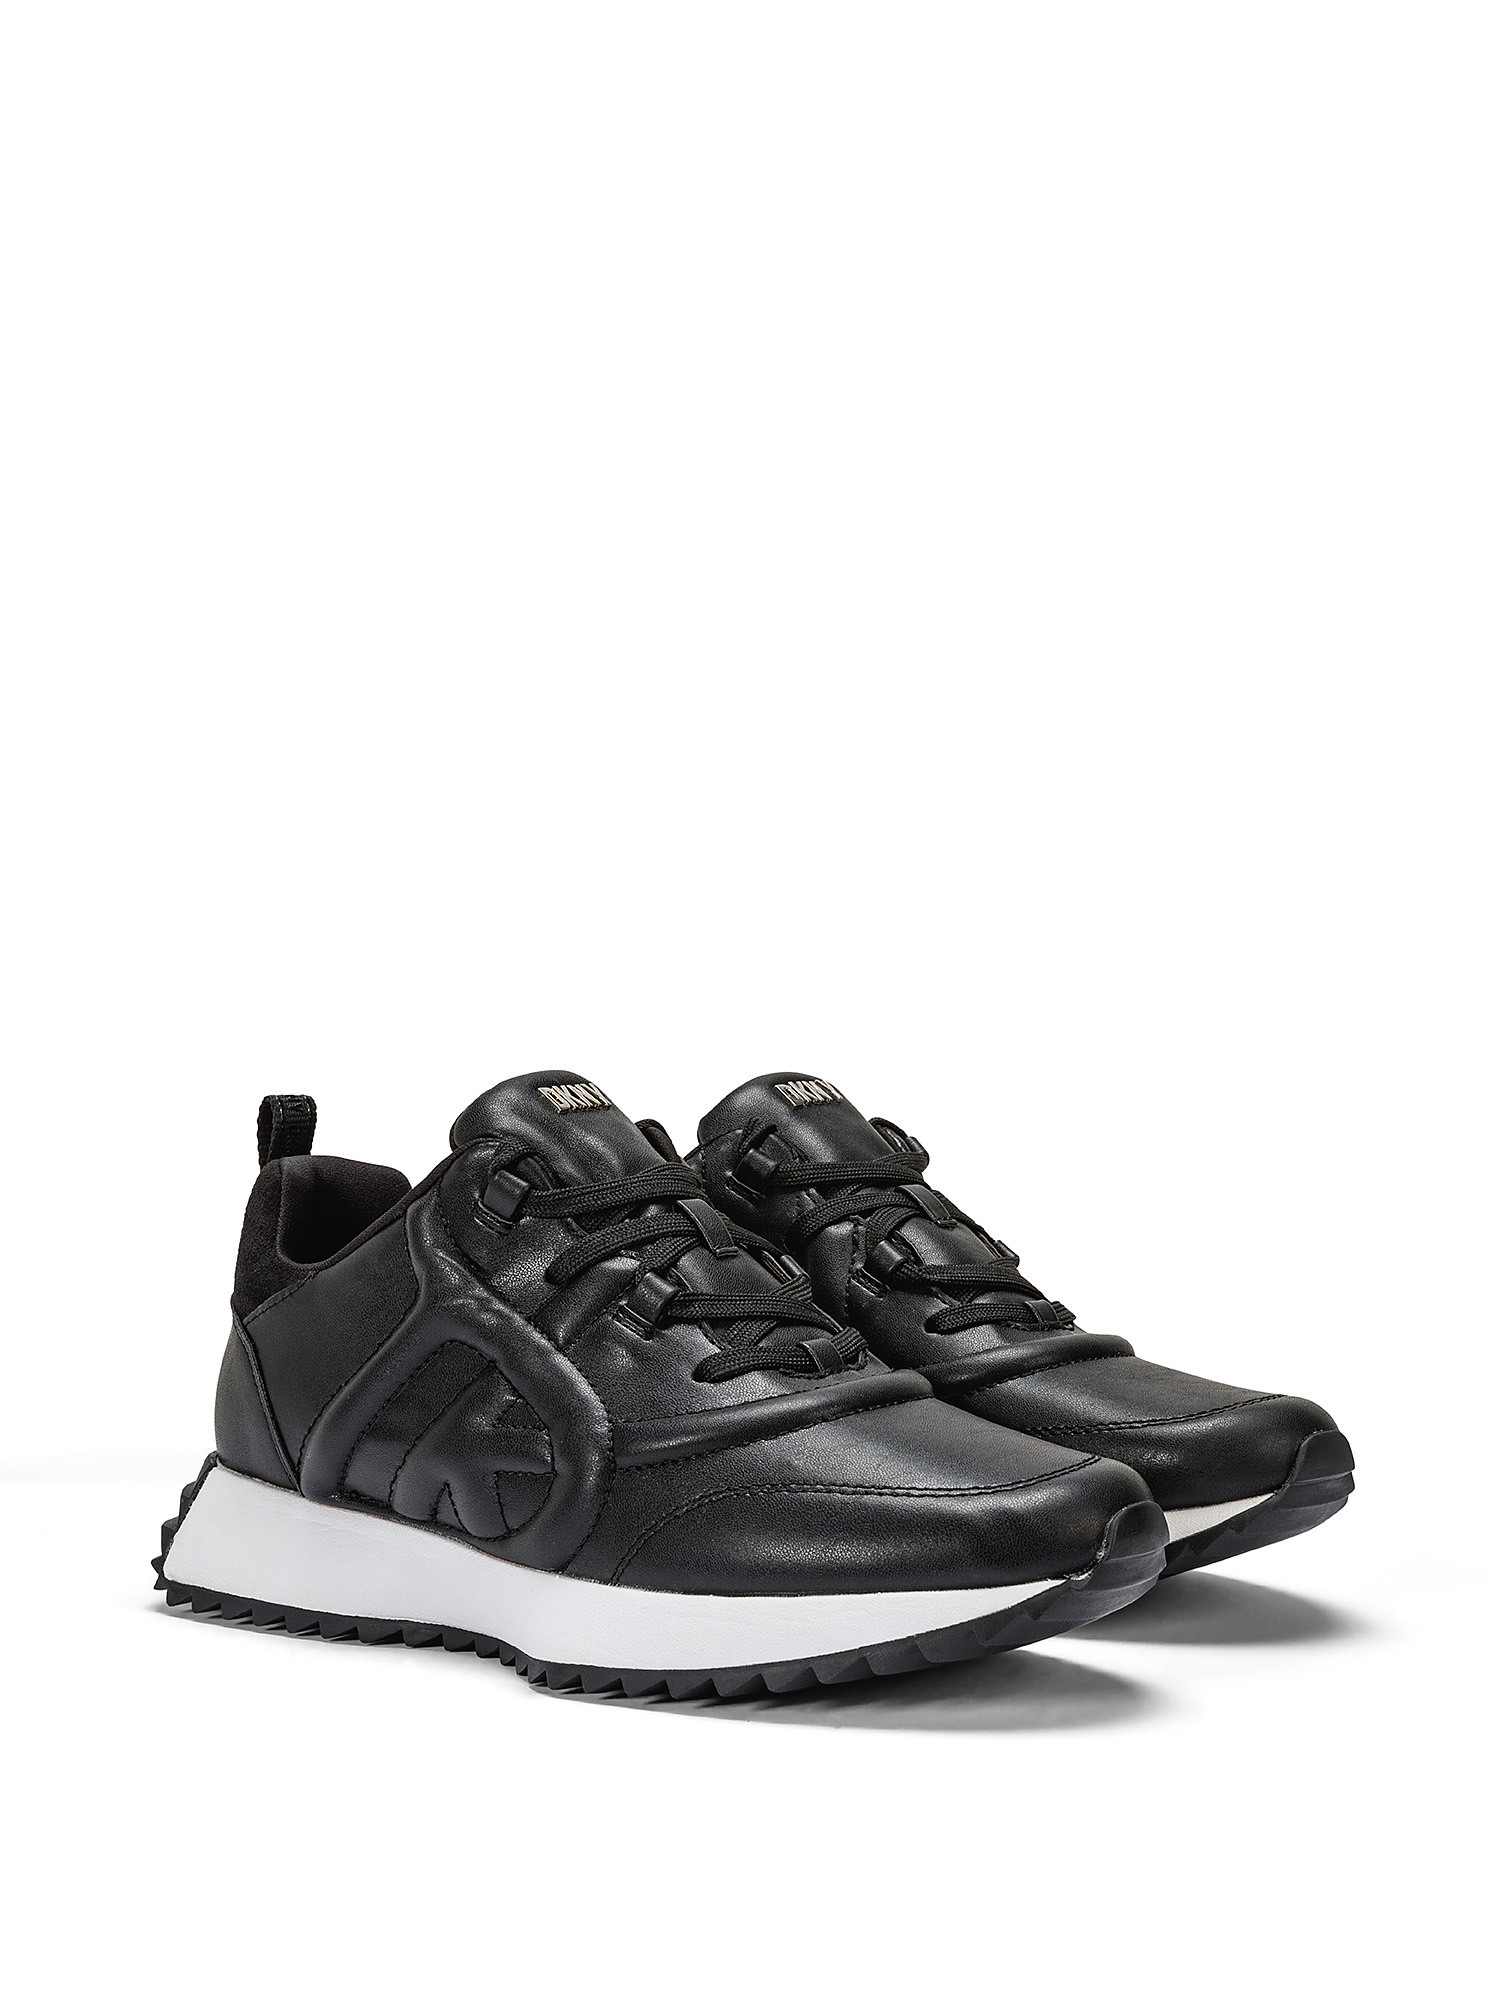 DKNY - Sneakers NIX, Black, large image number 1